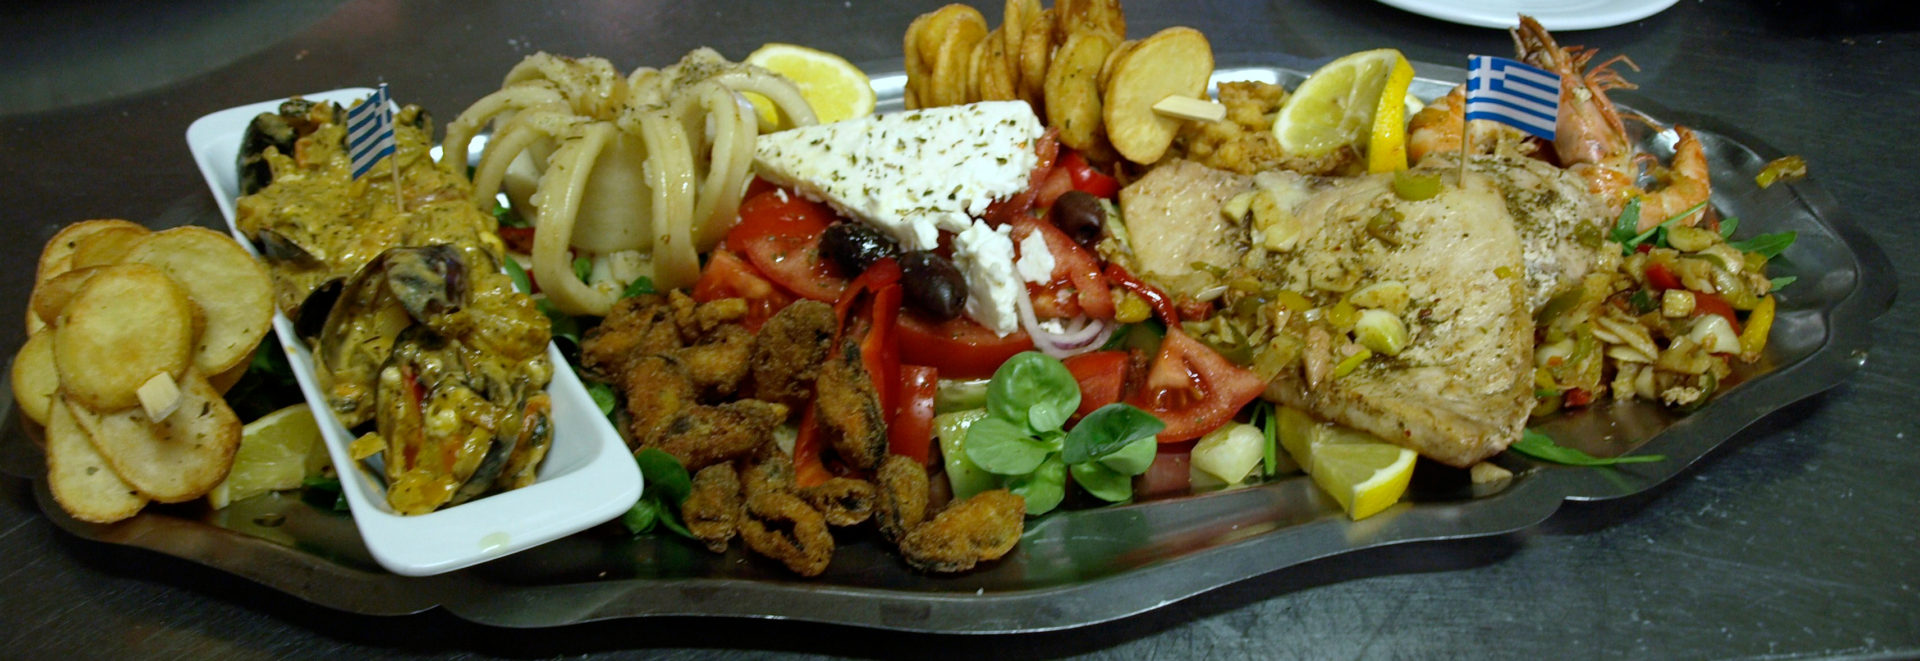 Csodálatos görög fűszerek teszik ízletessé az ételeket.